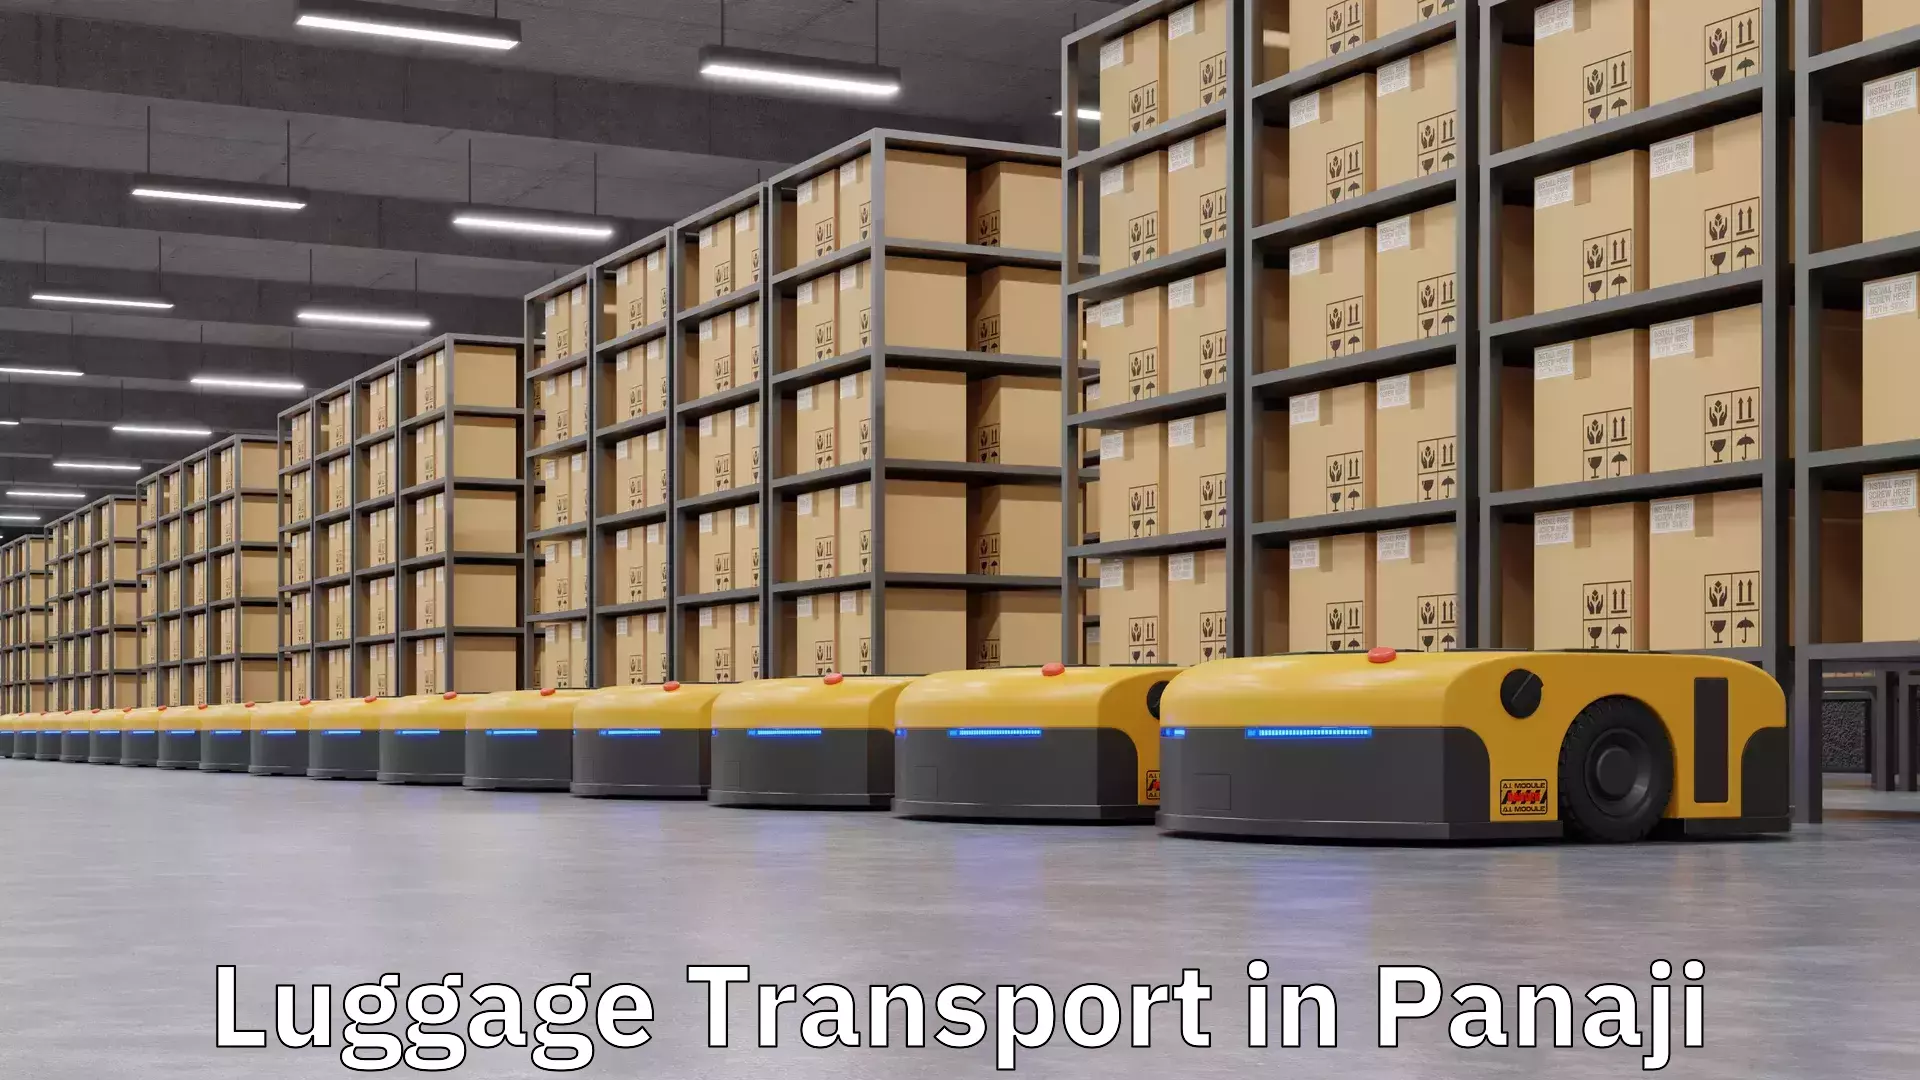 Luggage transport rates in Panaji